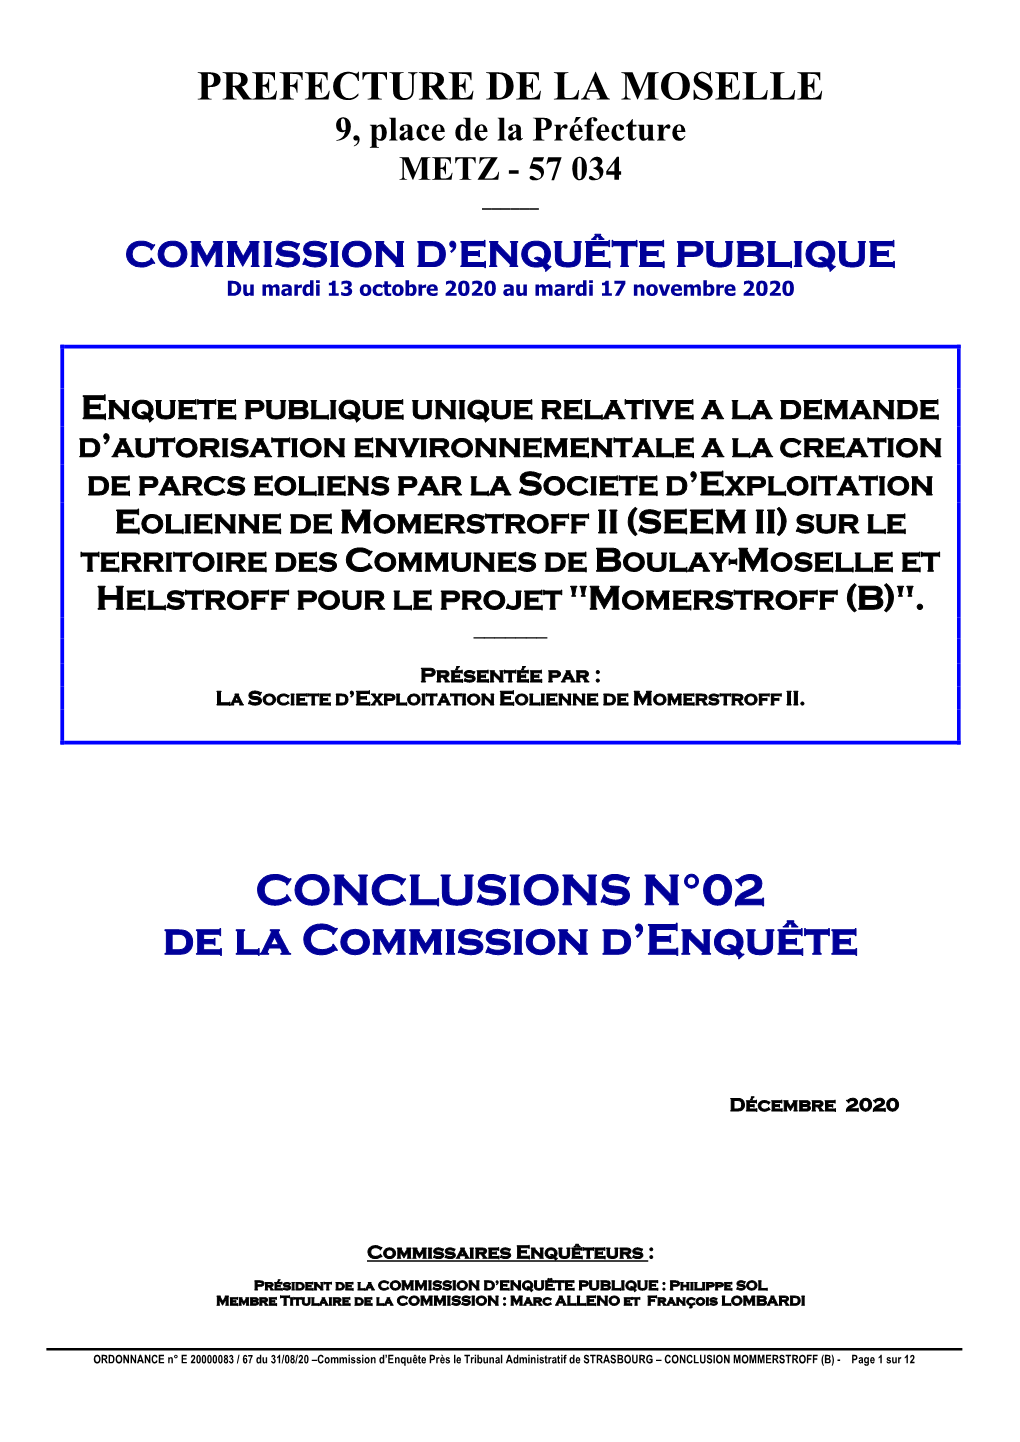 CONCLUSIONS N°02 De La Commission D'enquête